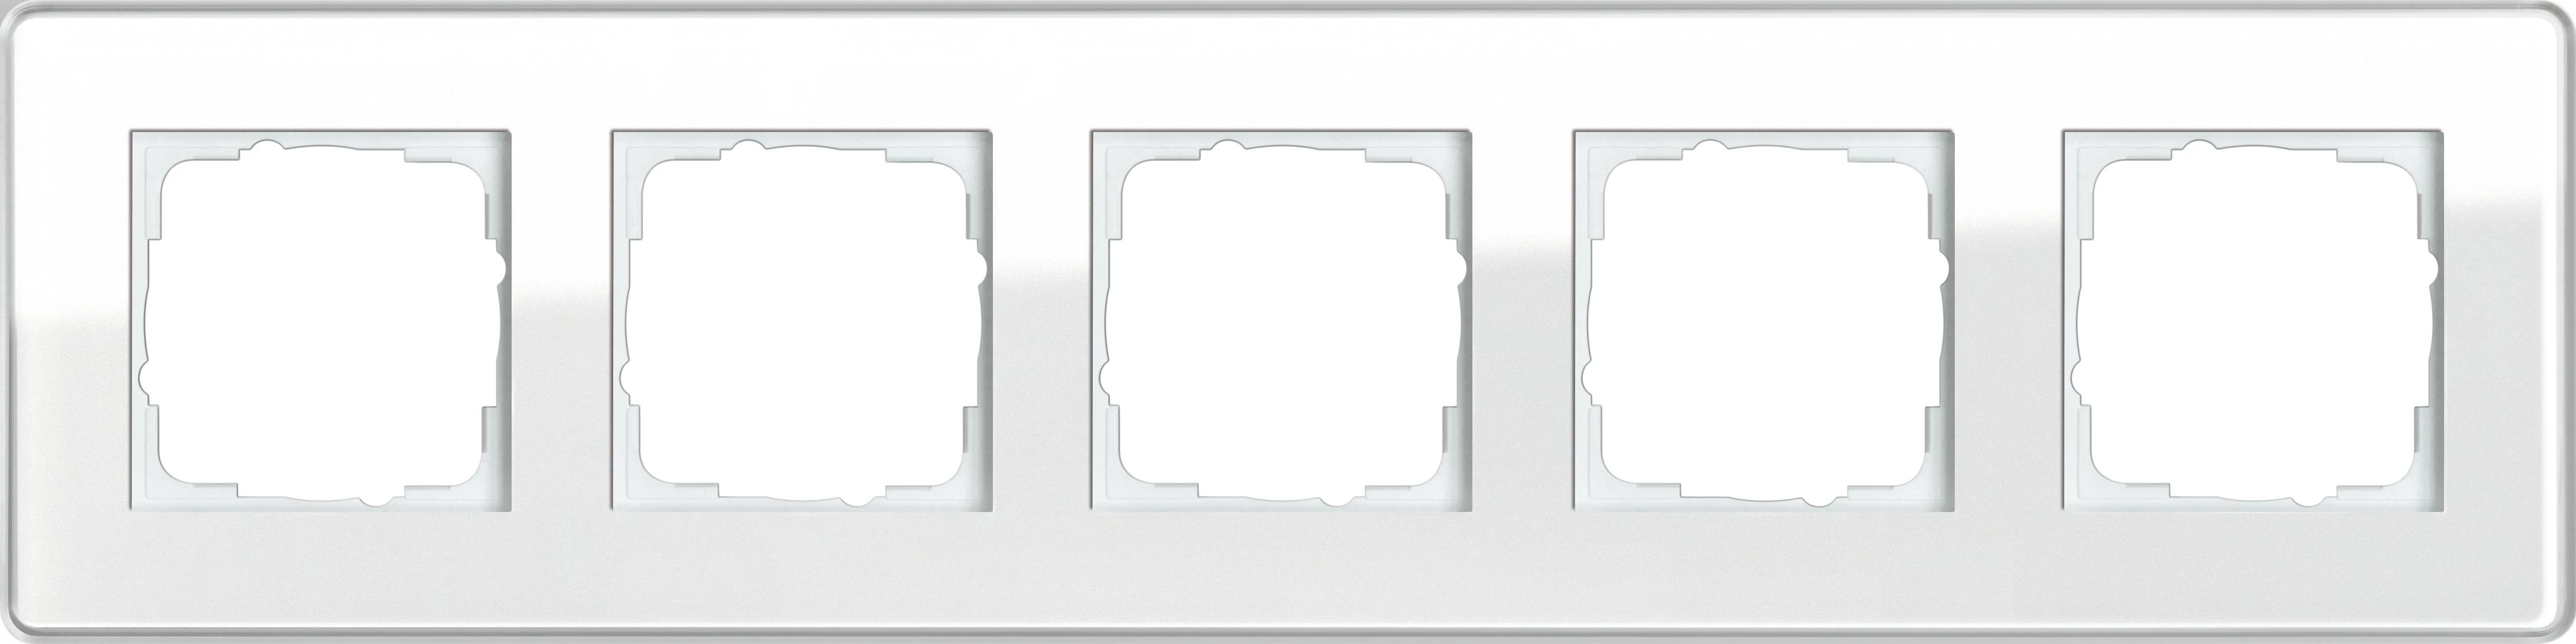  артикул 0215512 название Рамка 5-ая (пятерная), Стекло Белое, серия Esprit